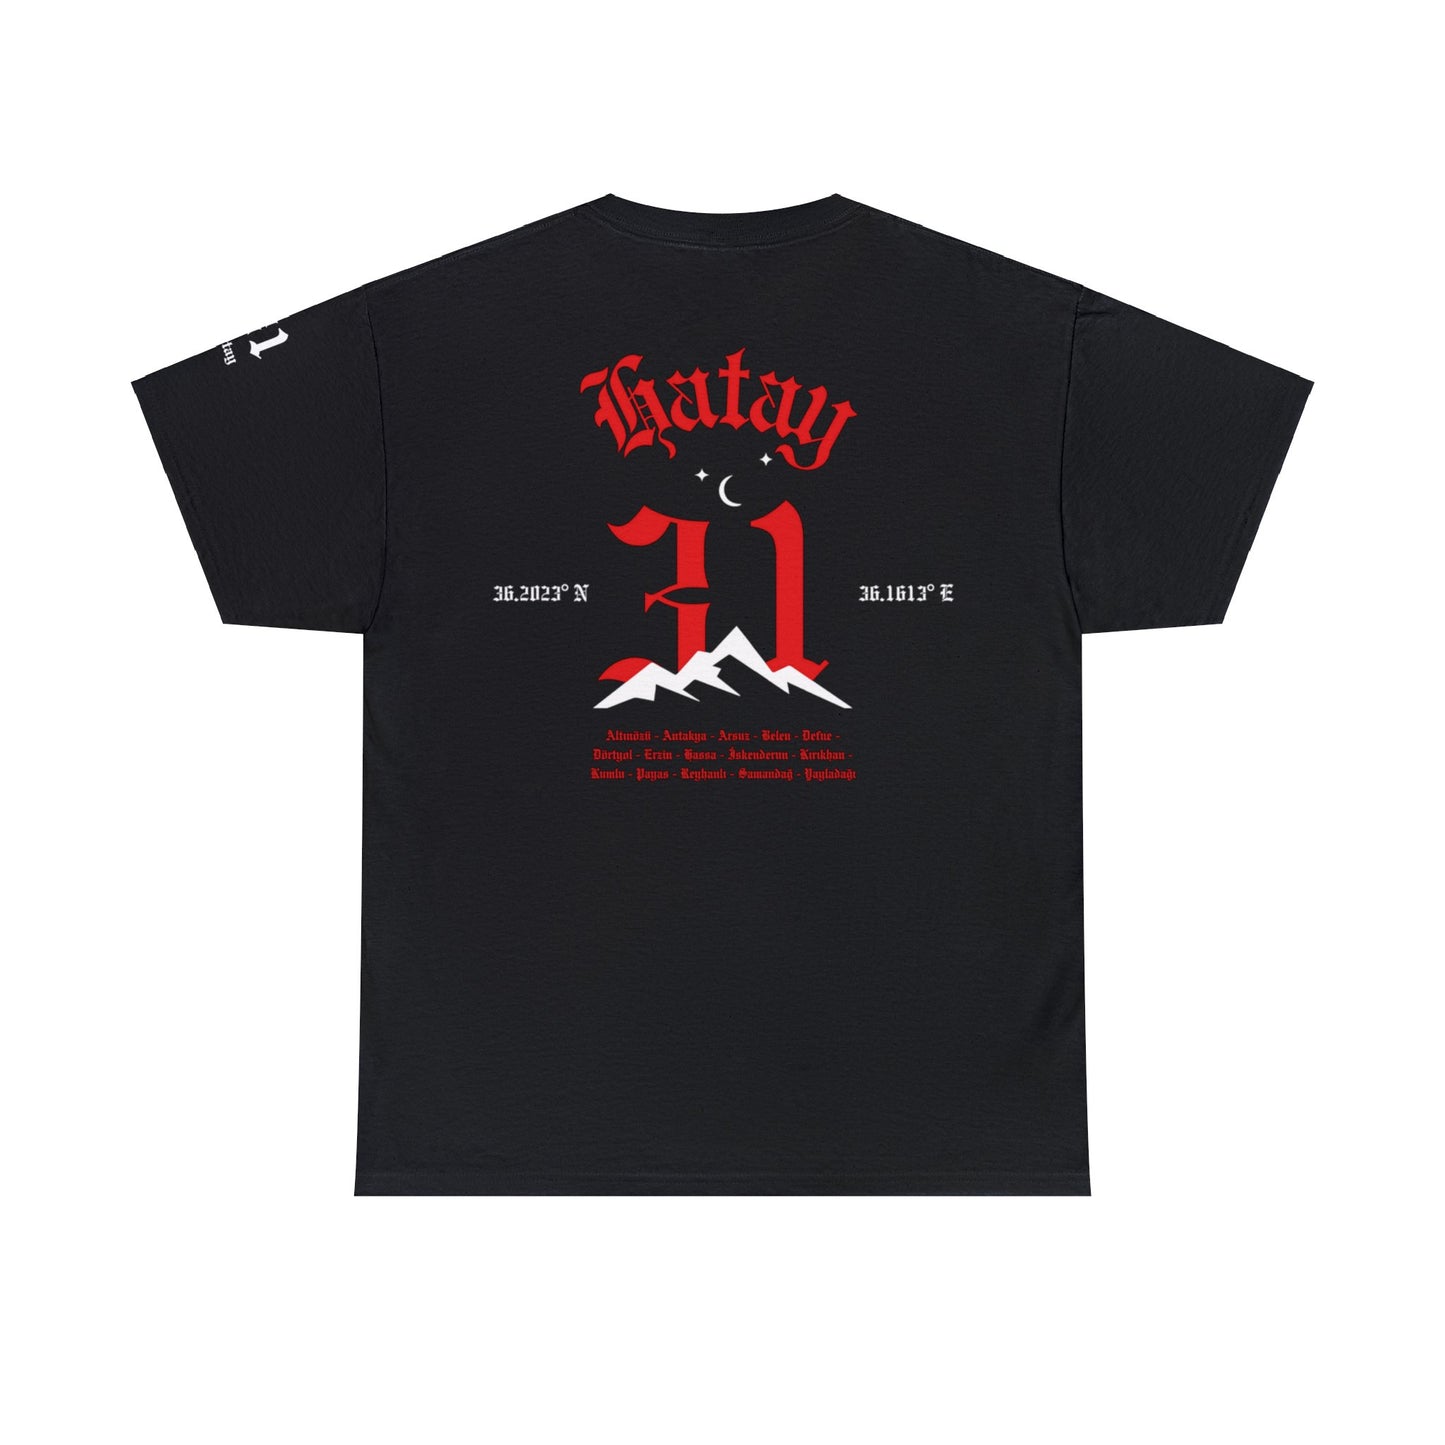 İlçem - 31 Hatay - T-Shirt - Back Print - Black